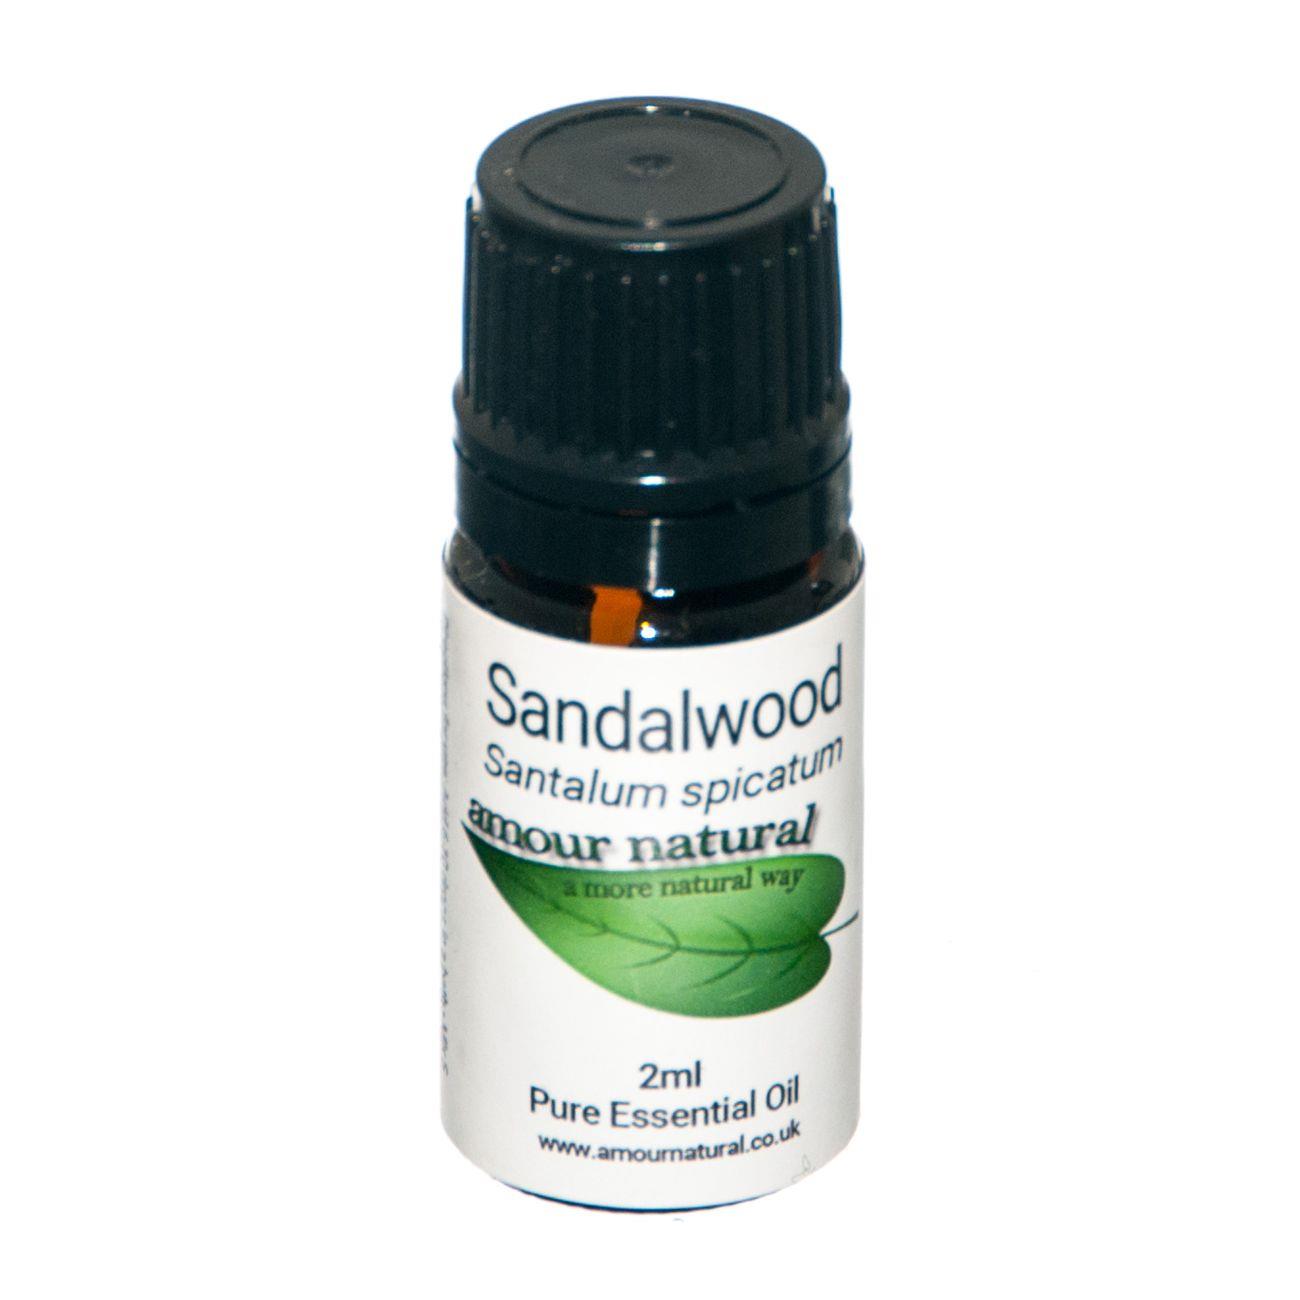 Sandalwood Pure Essential Oil 2ml